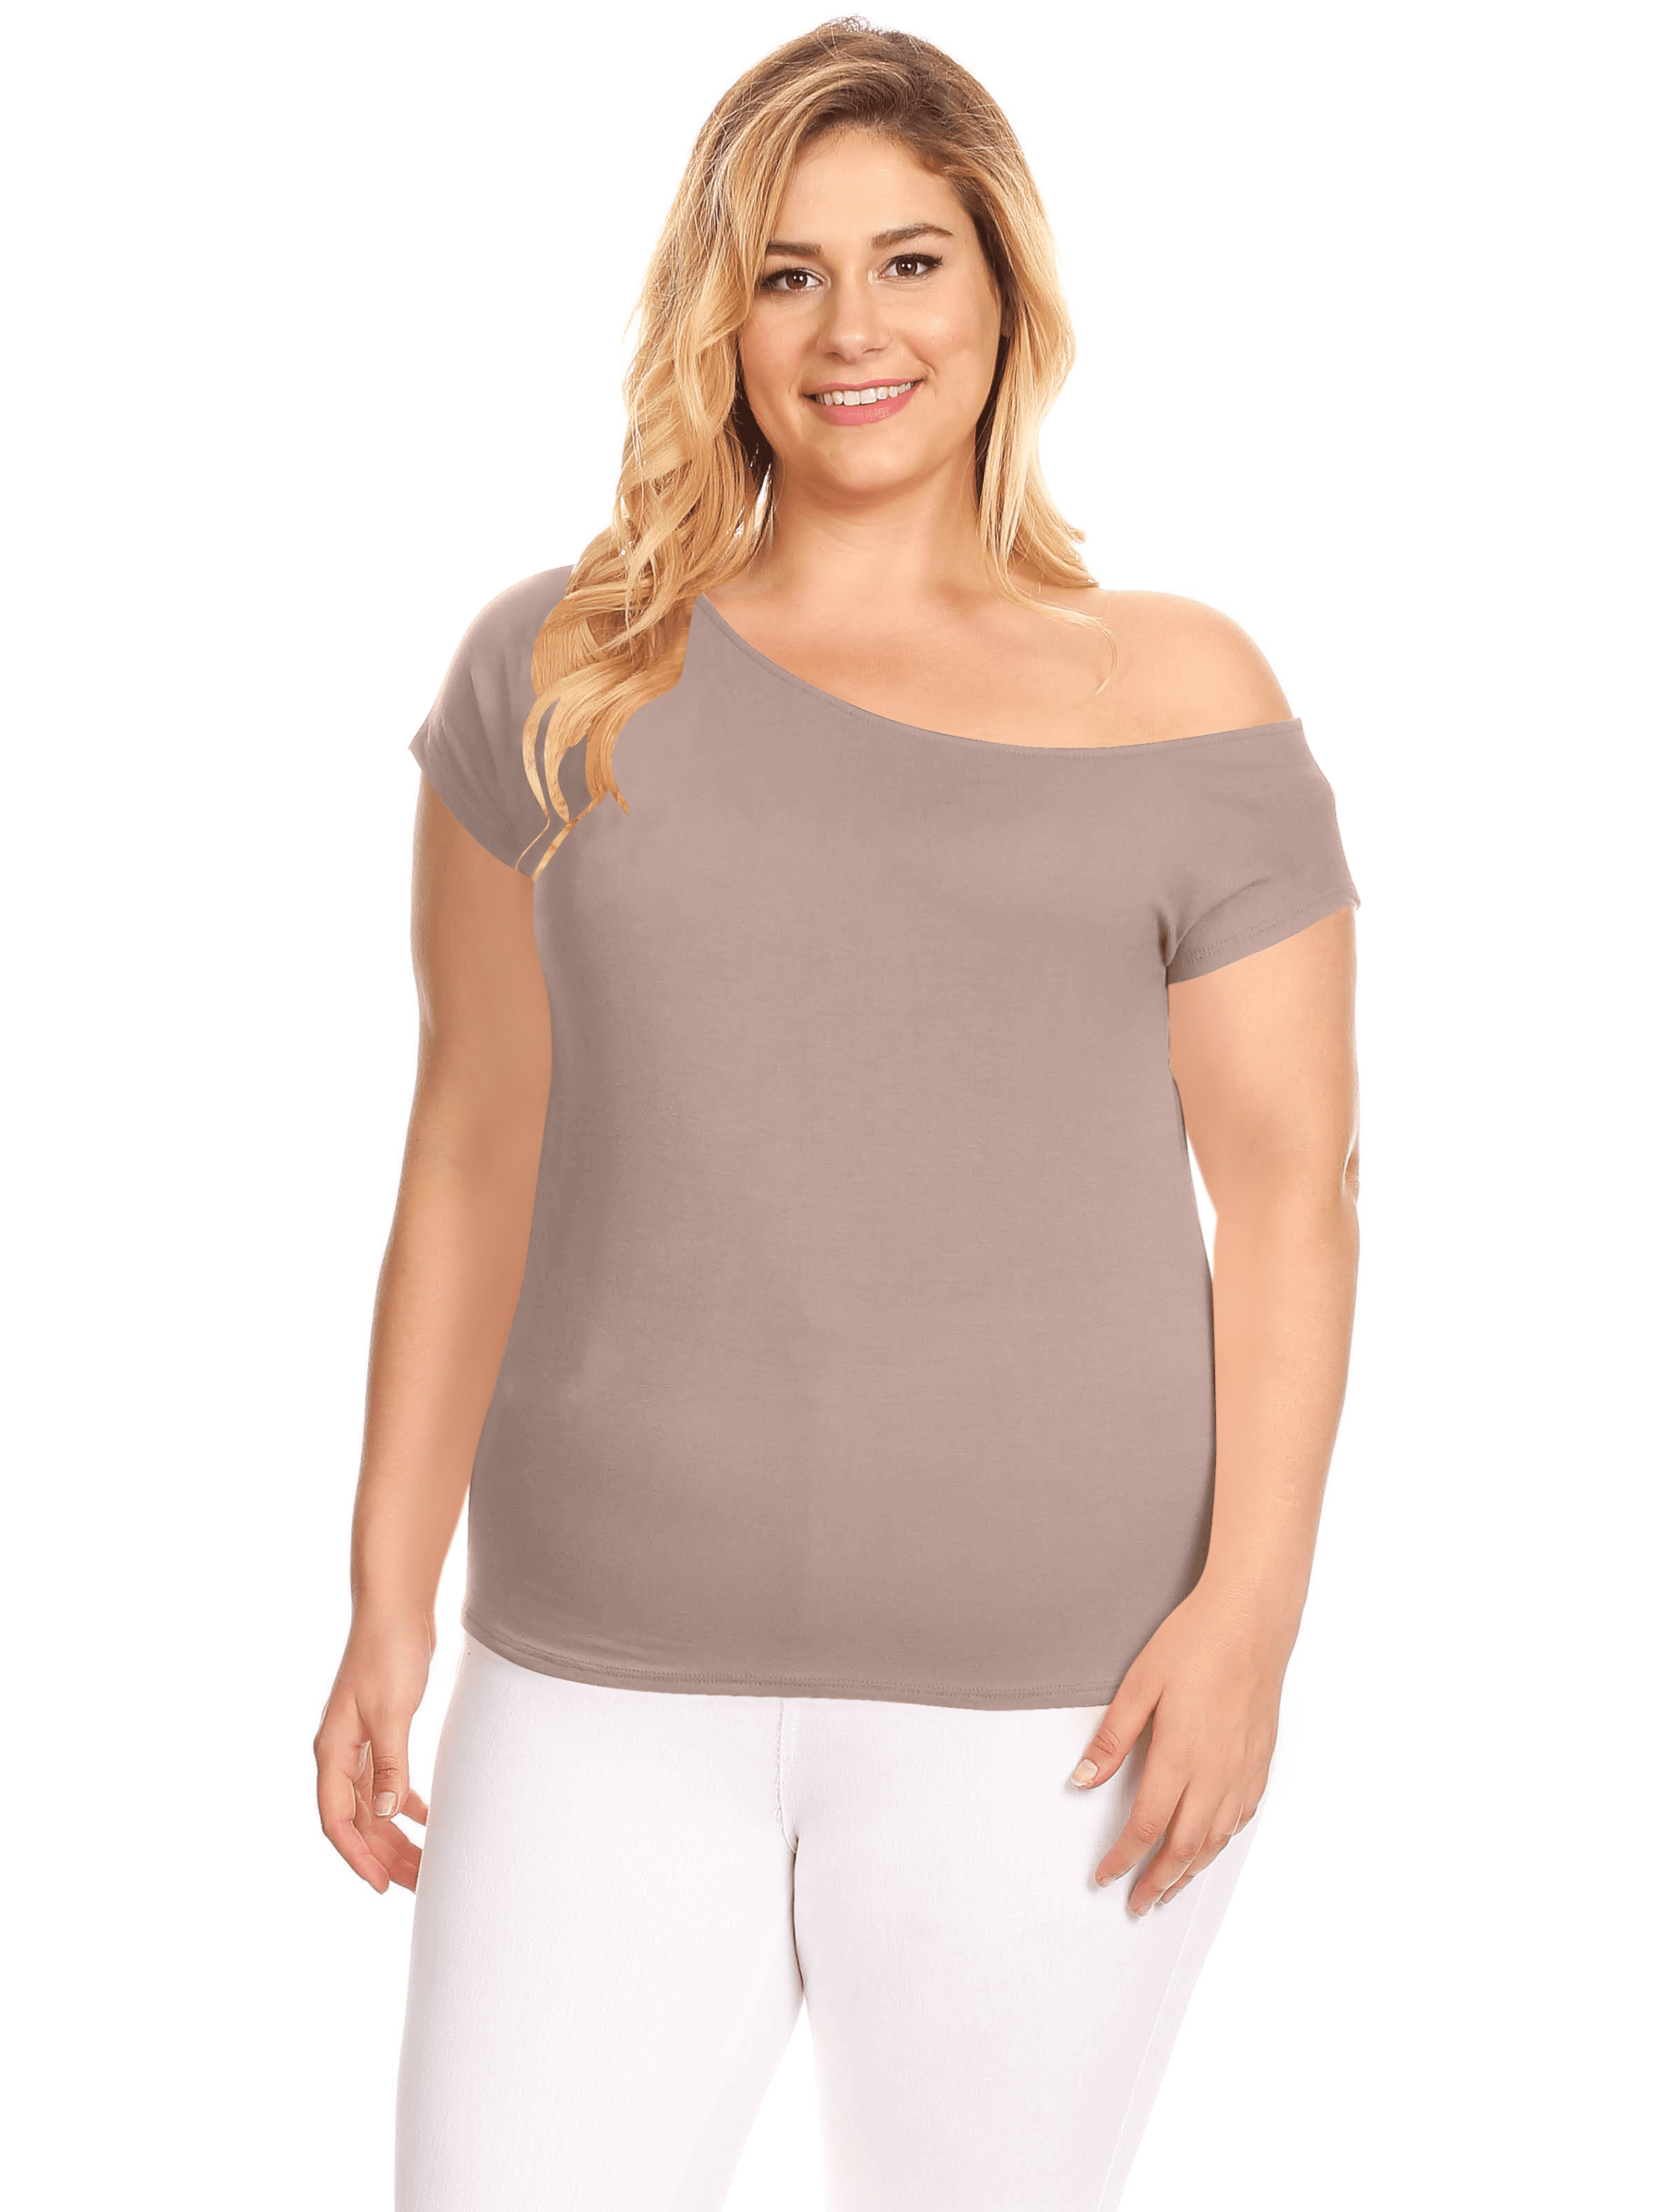 Repræsentere accelerator ganske enkelt Simlu Womens Plus Size Off Shoulder Tops off One Shoulder Short Sleeve Top  - USA - Walmart.com